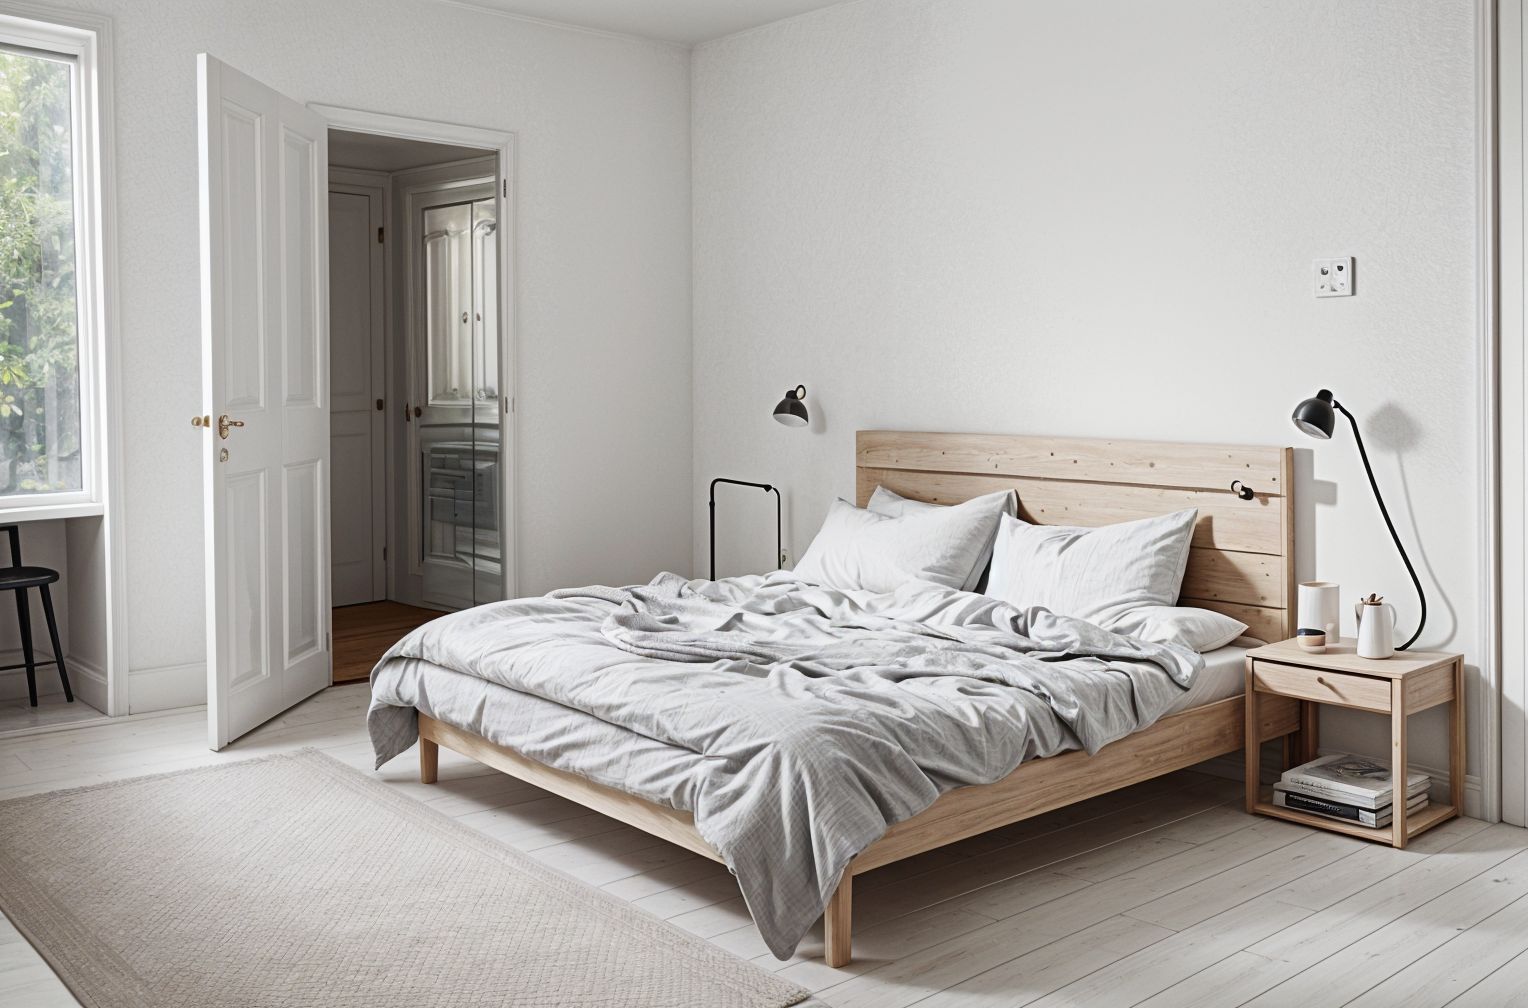 Scandinavian style Bedroom